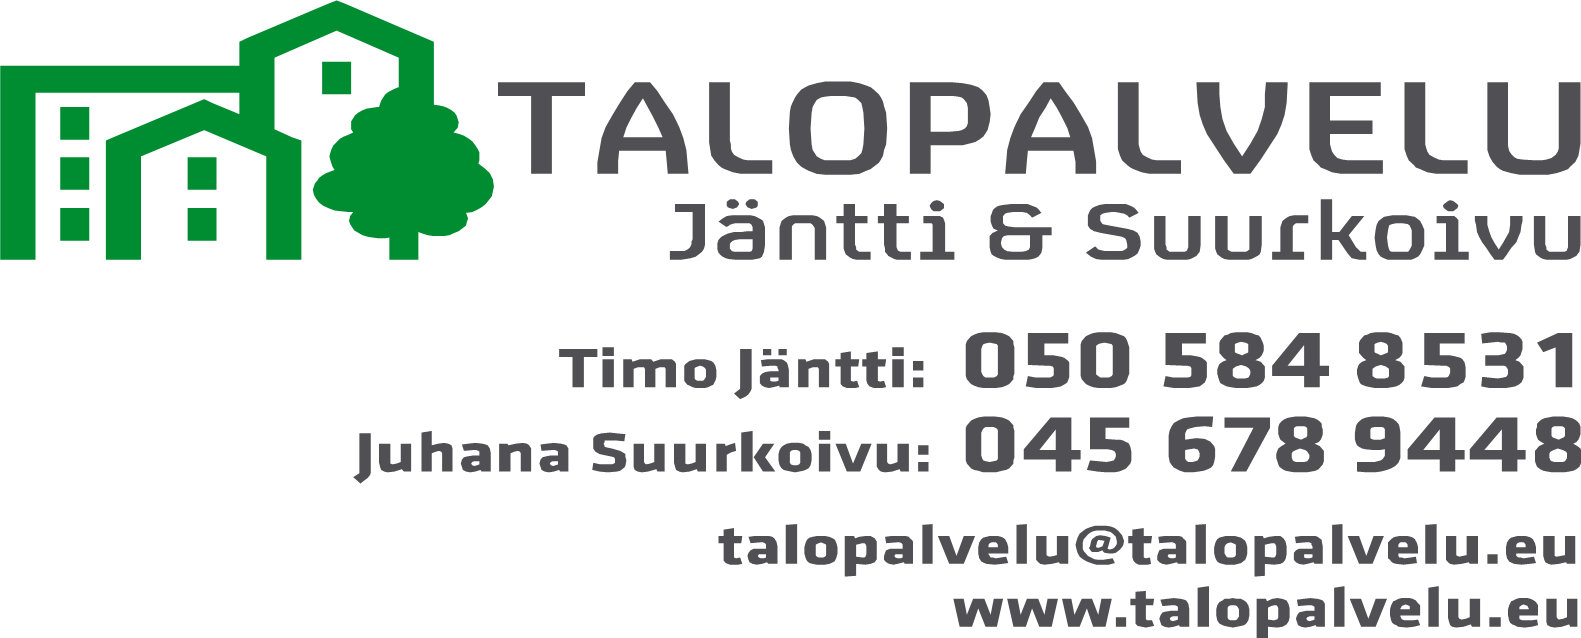 Talopalvelu Jäntti & Suurkoivu kiinteistöhuoltopalvelut